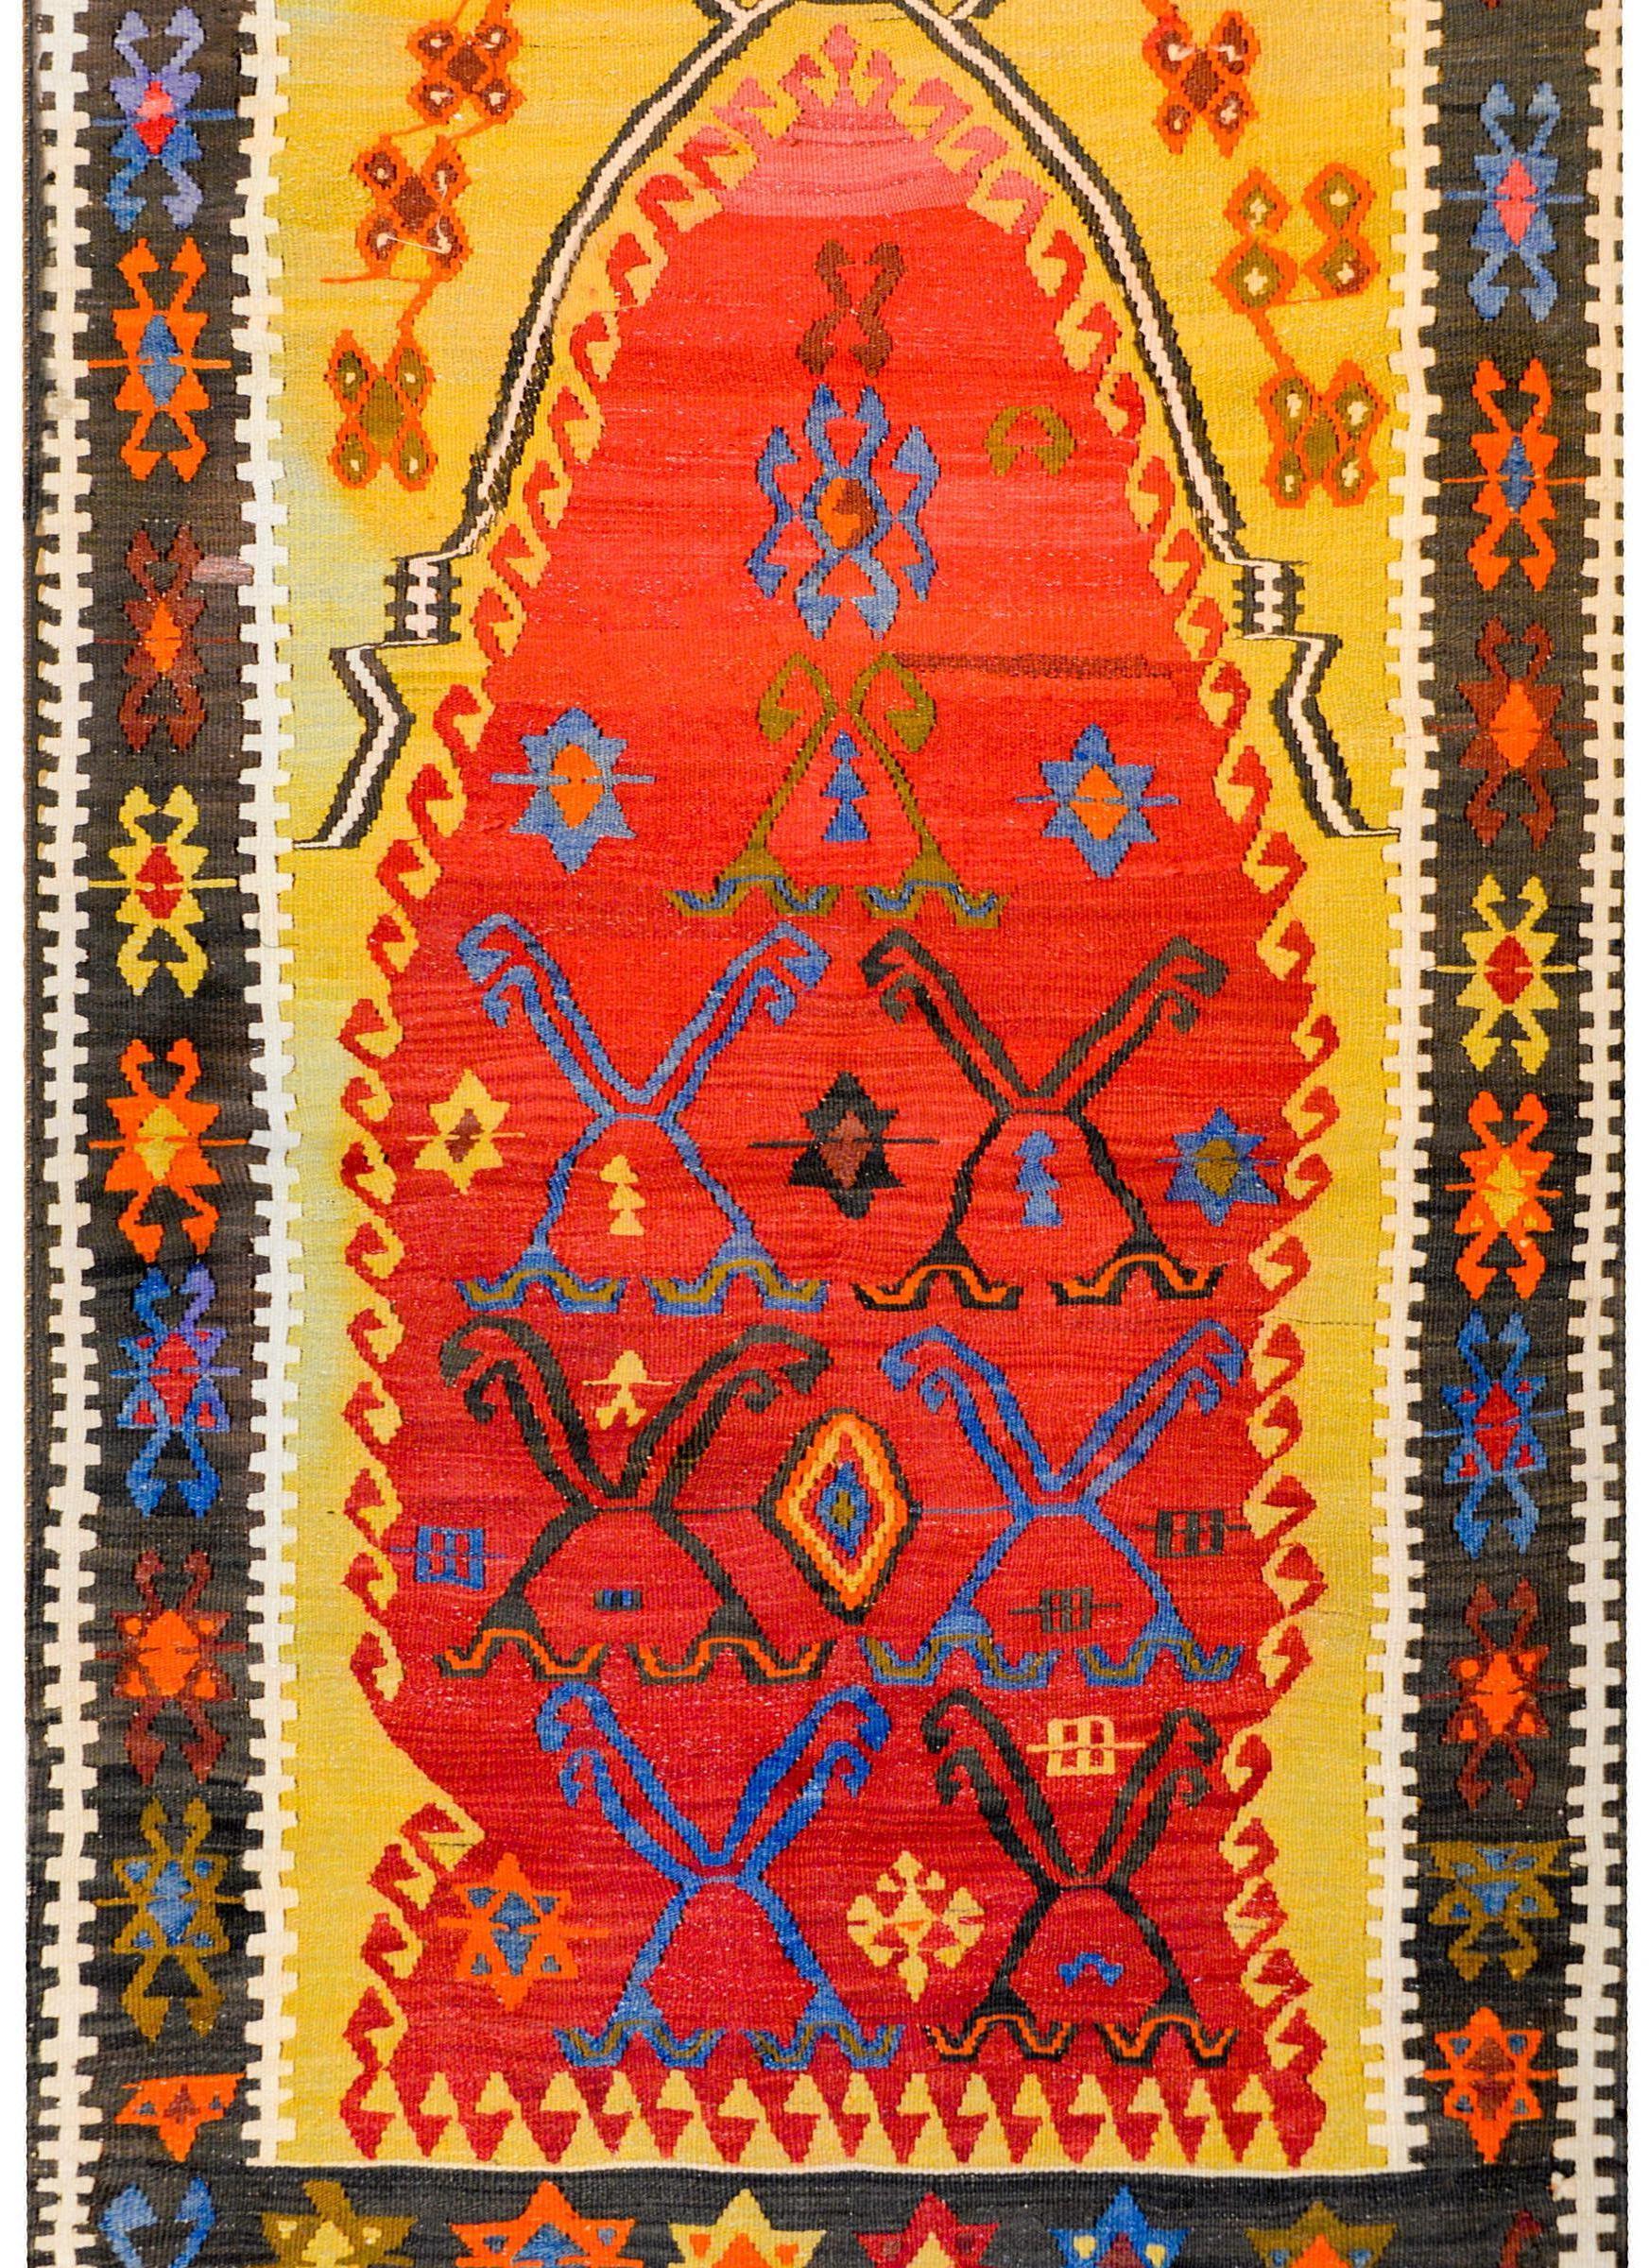 Un fantastique tapis de prière Kilim turc du début du 20e siècle avec un incroyable et audacieux motif coloré de fleurs stylisées et de vignes tissées en indigo, vert et orange, sur un riche fond cramoisi entouré d'un cadre doré brillant avec des